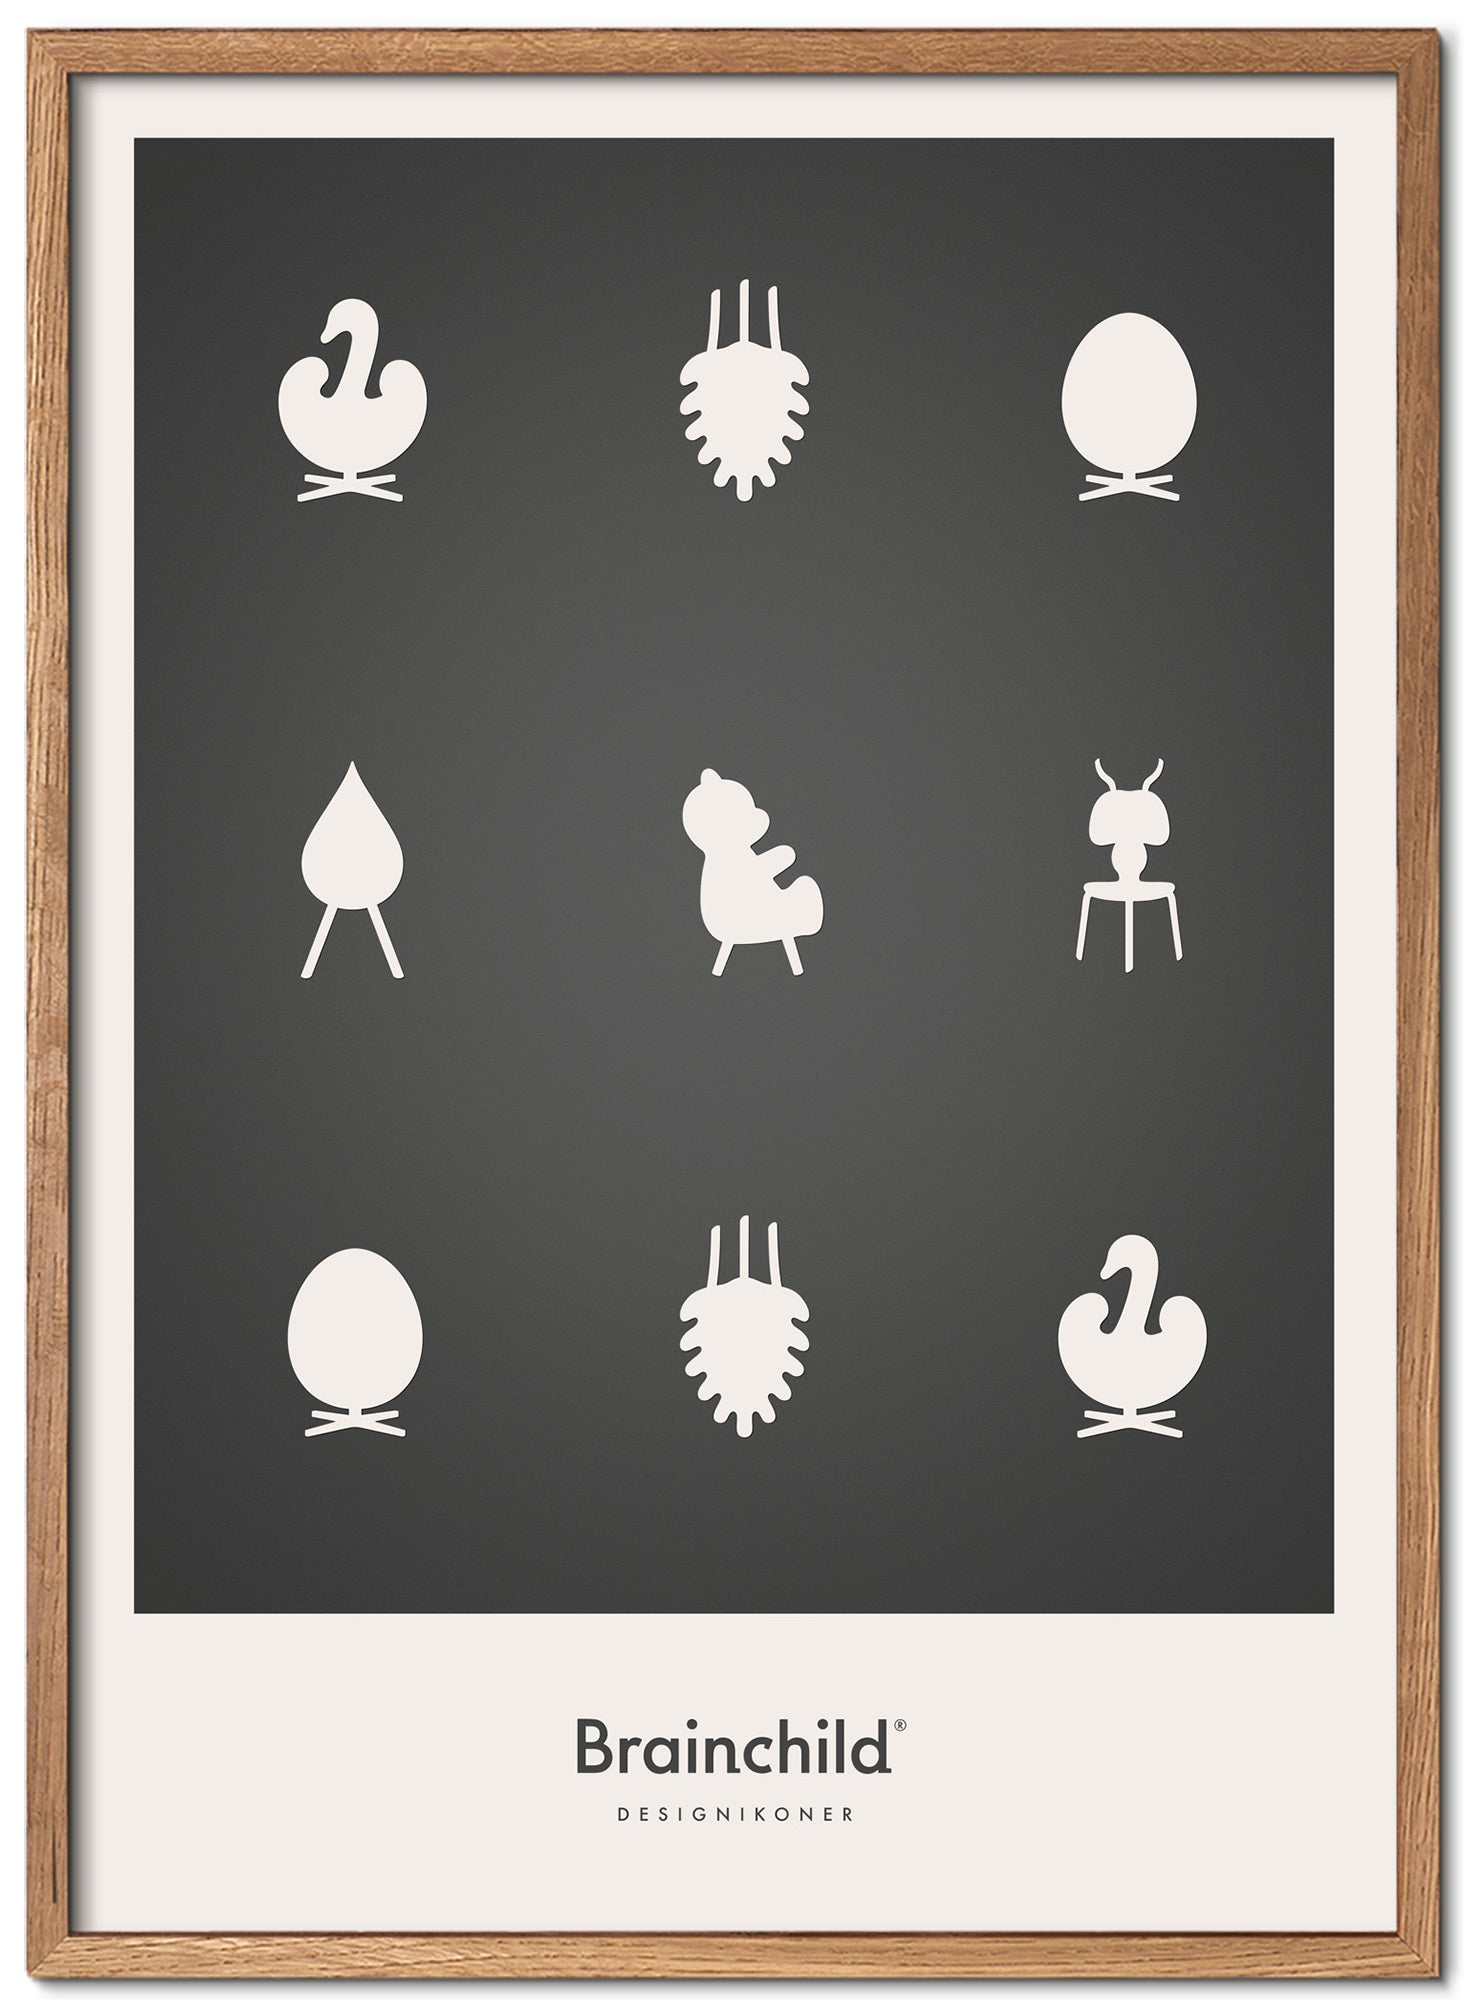 Framone poster di icone di design da un'idea di legno chiaro A5, grigio scuro